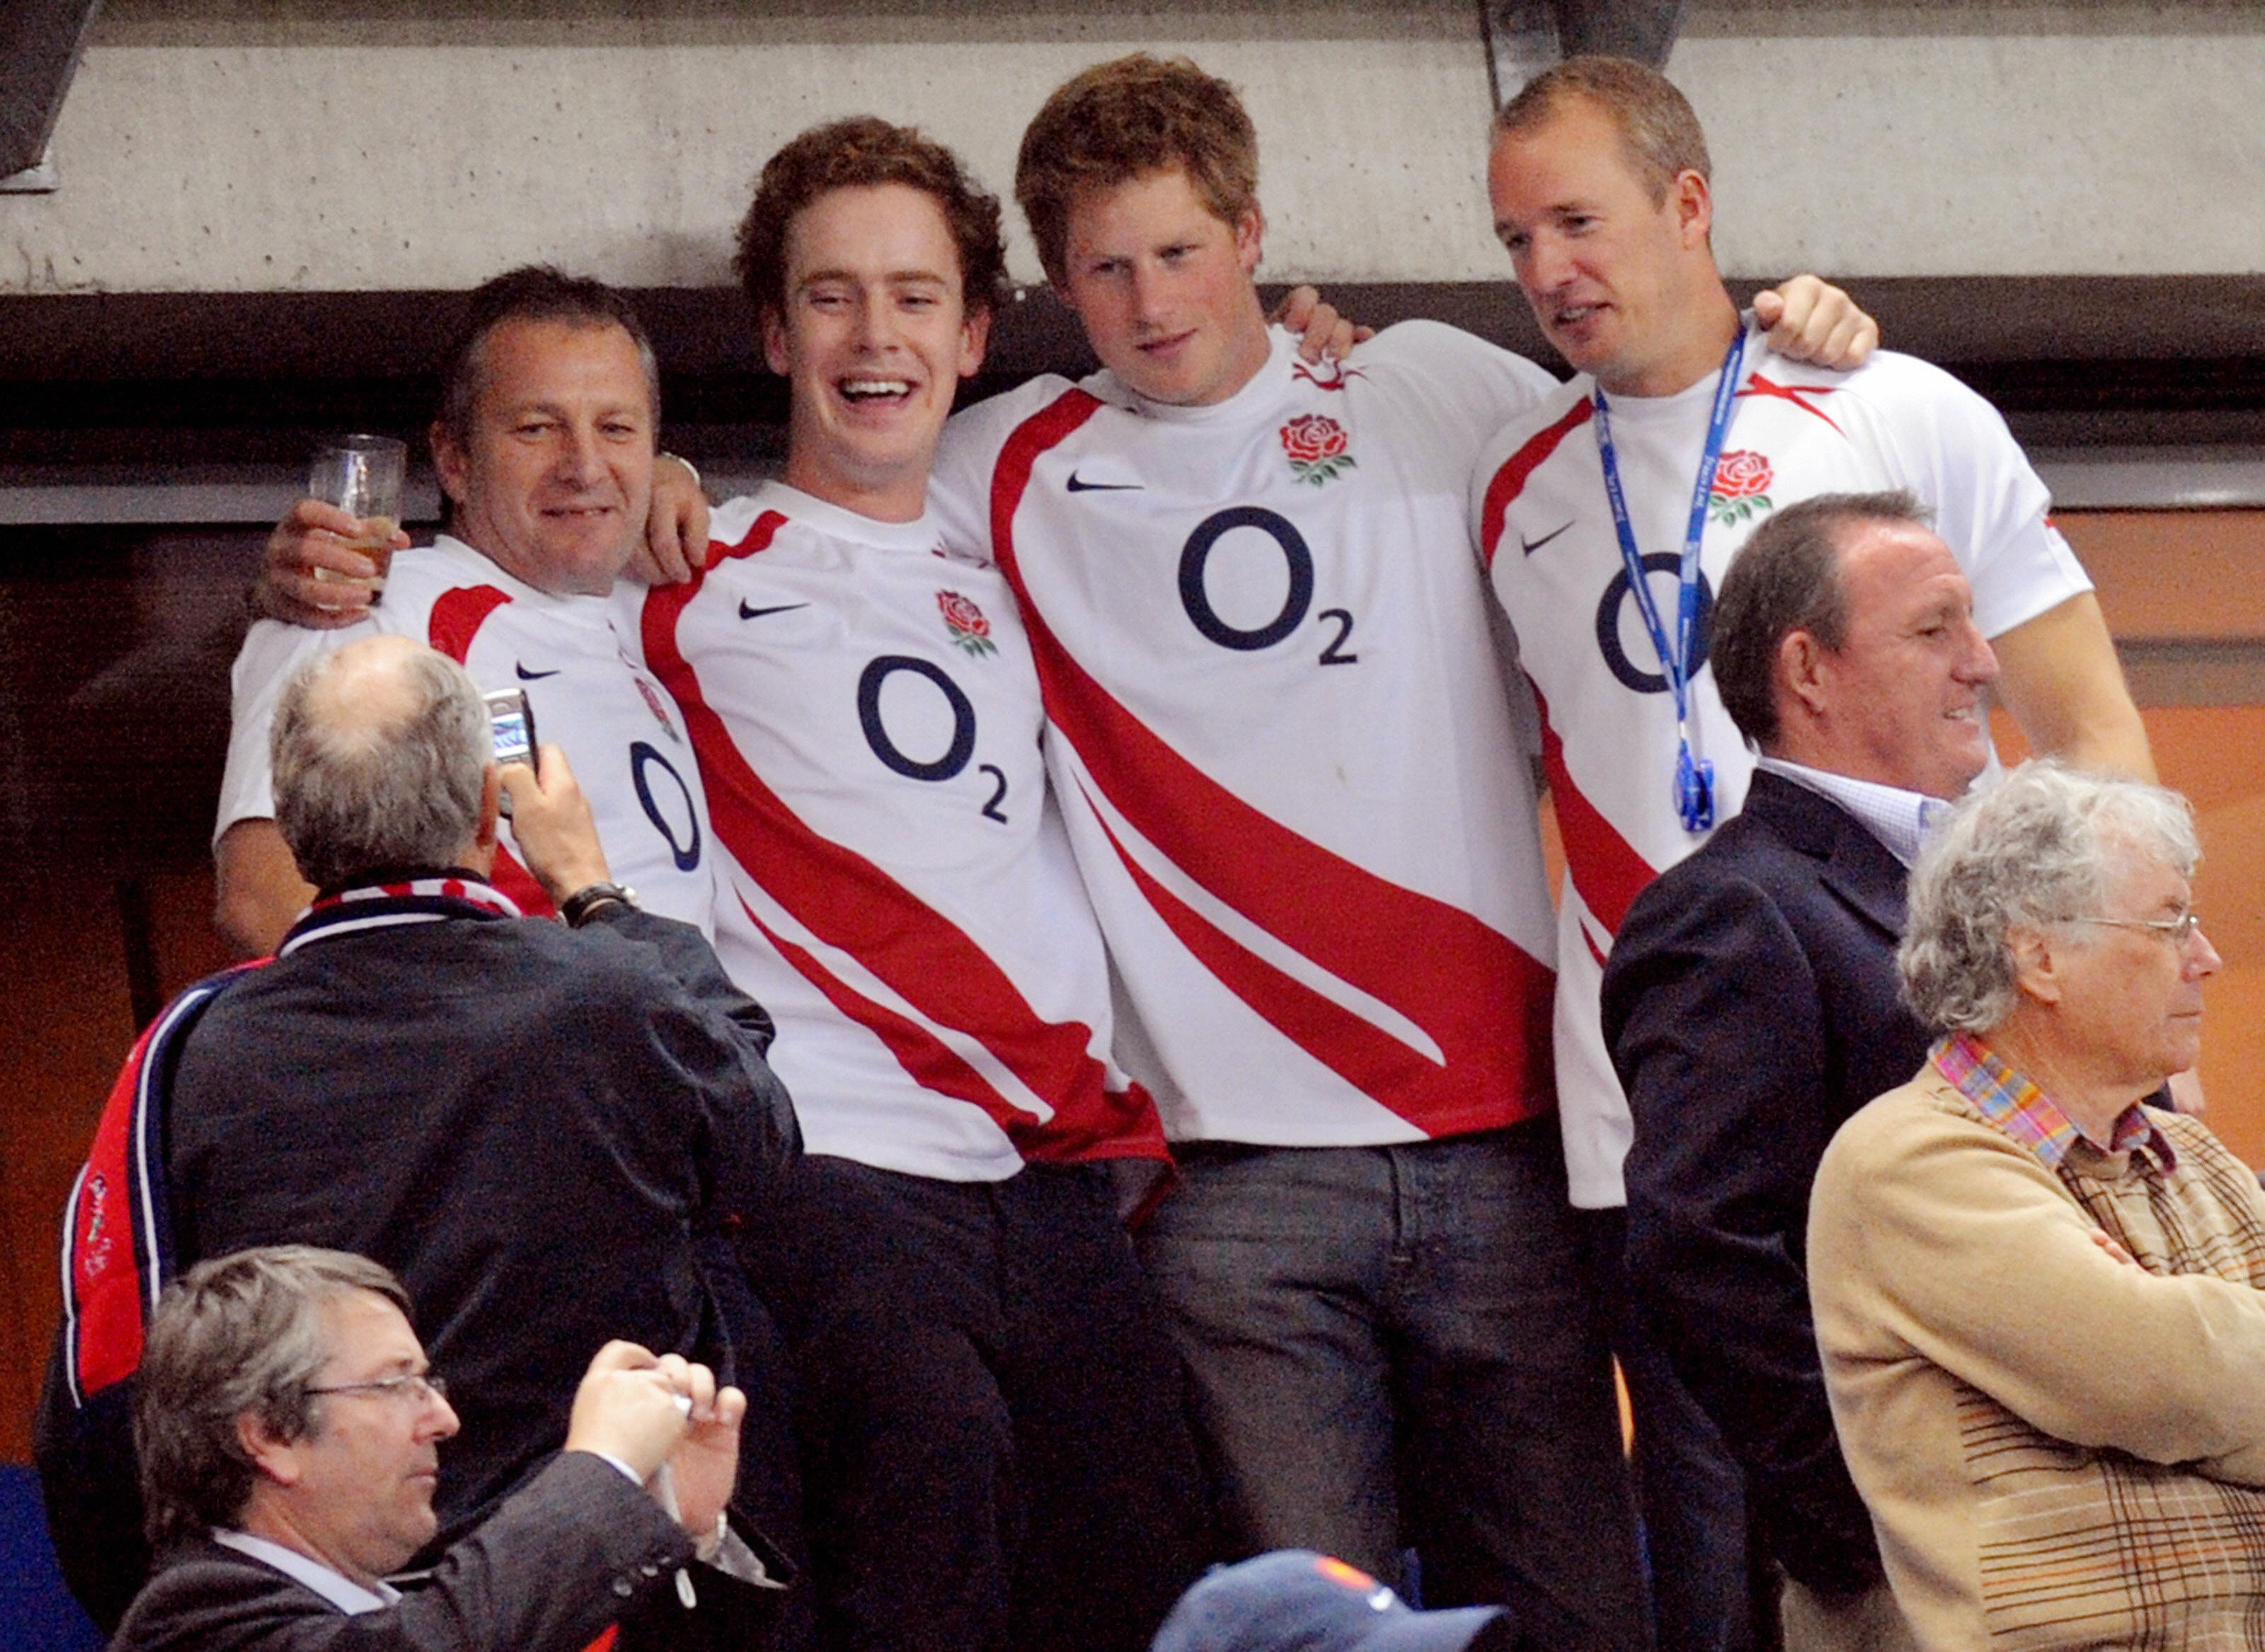 Le prince Harry célébrant la victoire de l'Angleterre avec des amis à la fin du match de demi-finale de la Coupe du monde de rugby 2007 opposant l'Angleterre à la France, au Stade de France, le 13 octobre 2007 à Saint-Denis, Paris. | Source : Getty Images